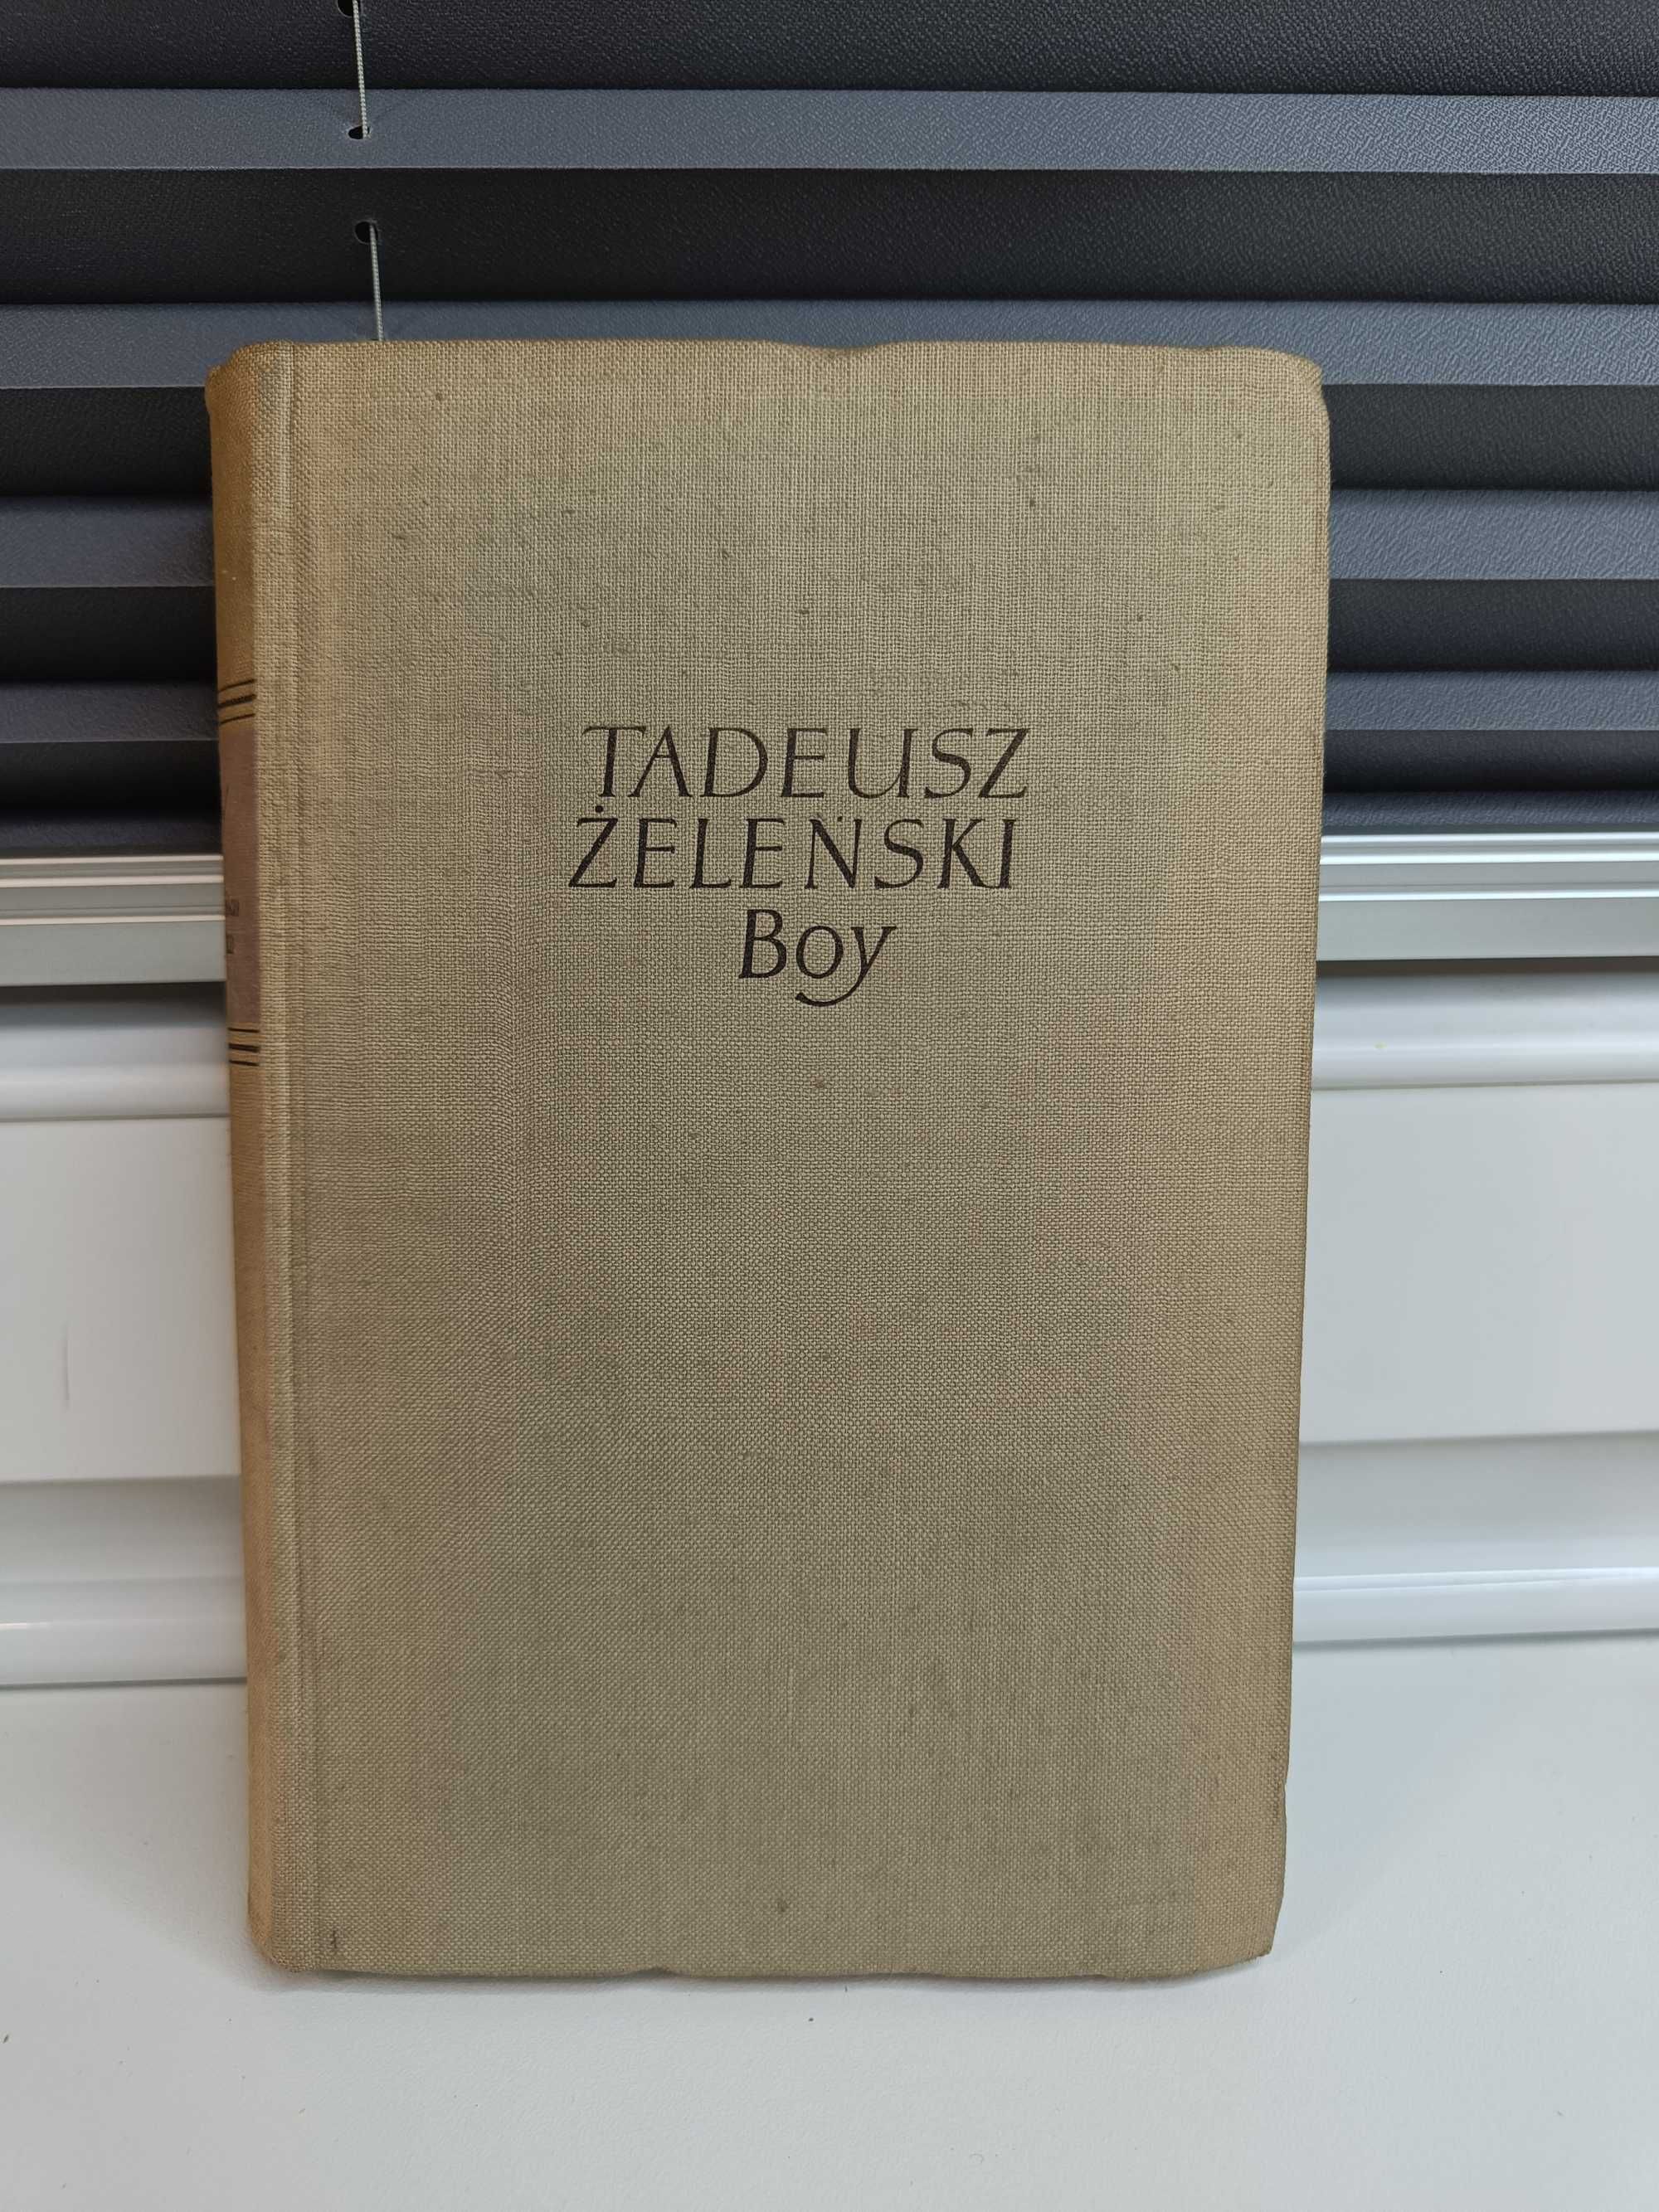 Tadeusz Żeleński (Boy) "Marysieńka Sobieska", tom VII Pism